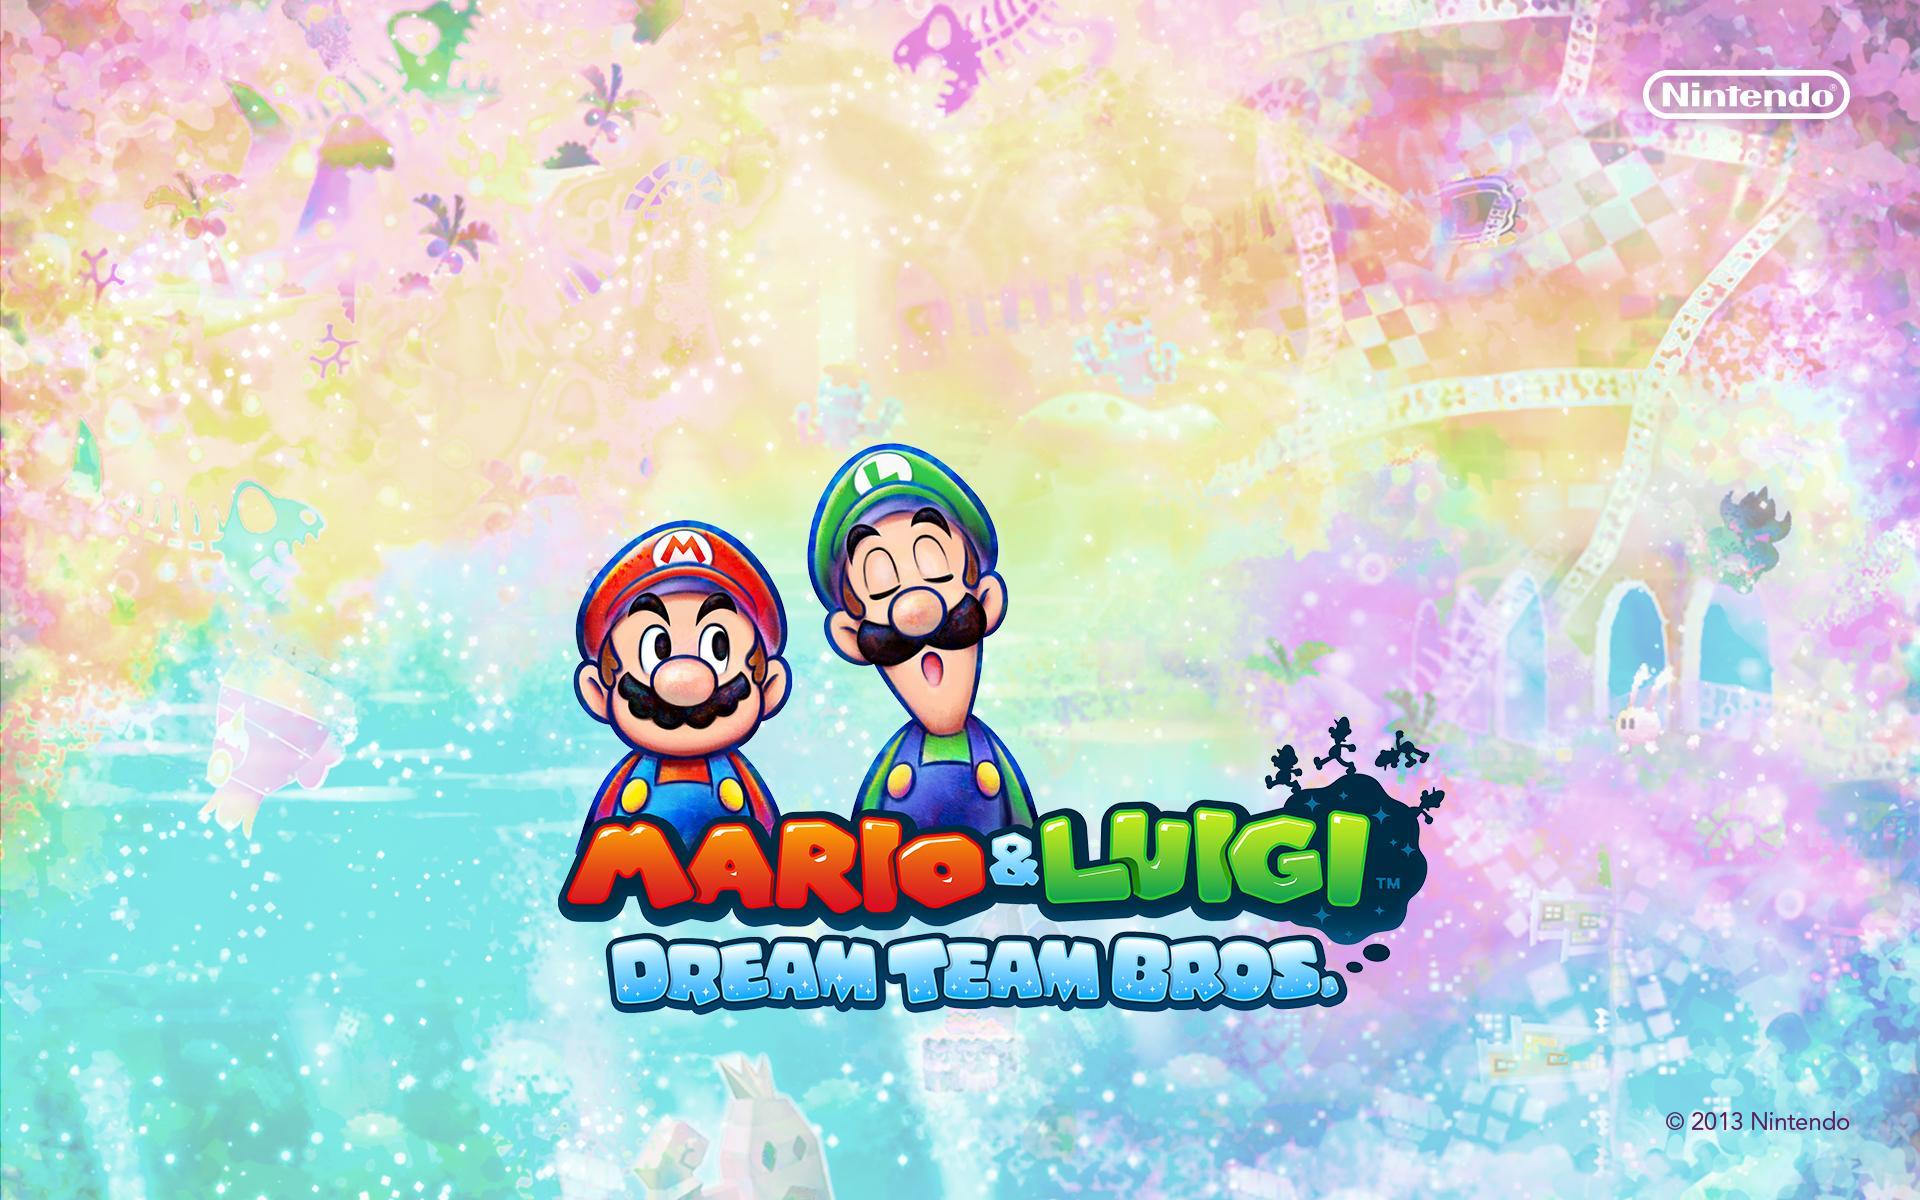 Mario luigi dream. Mario & Luigi: Dream Team Bros.. Mario & Luigi - Dream Team Bros. 3ds. Mario and Luigi Dream Team. Марио и Луиджи Дрим тим БРОС.